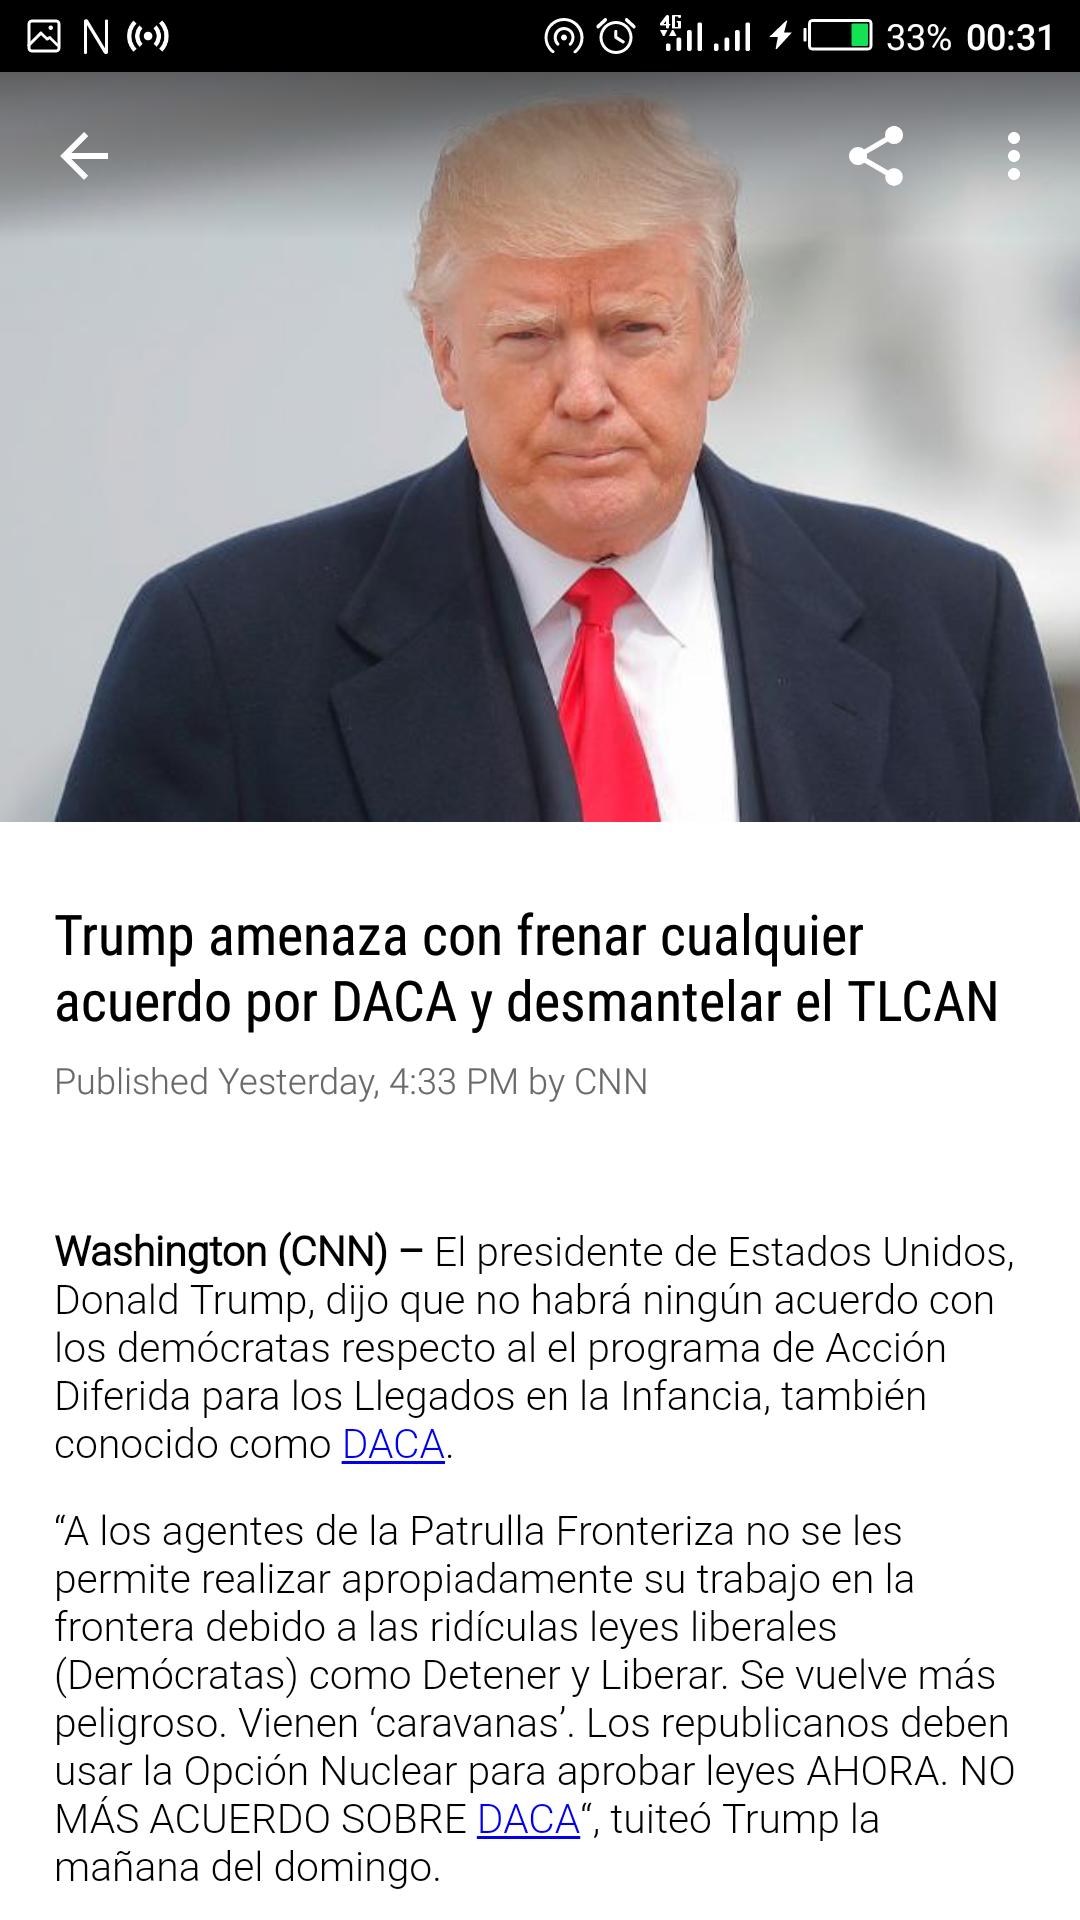 Noticias Cnn En Espanol En Vivo For Android Apk Download